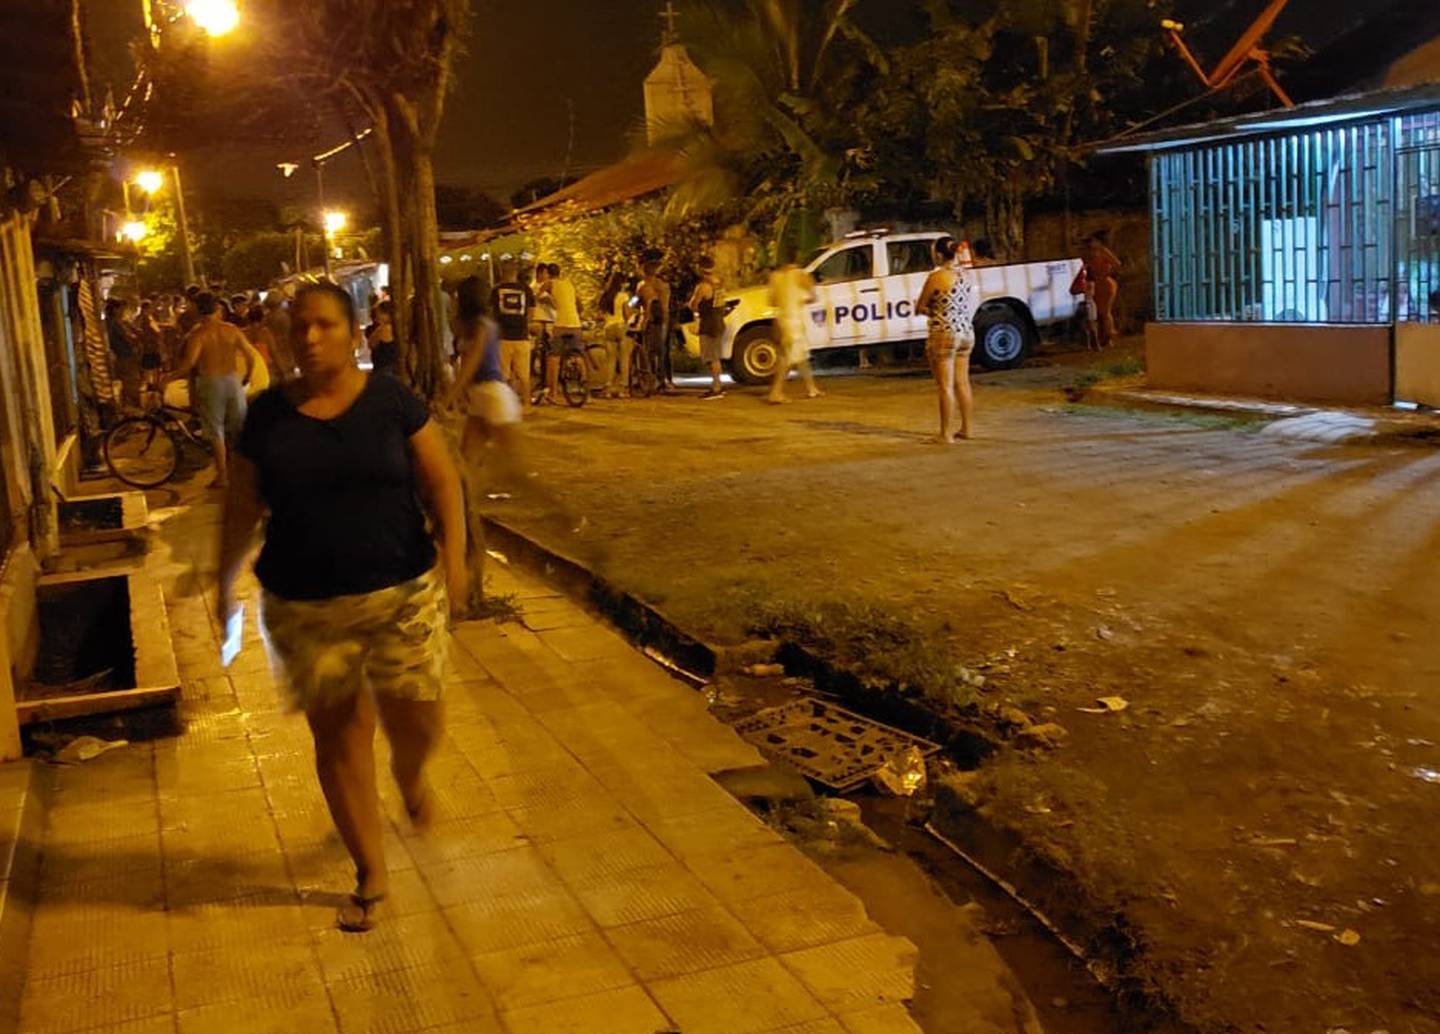 Los vecinos de Fray Casiano en Chacarita, que observaban la acción policial tuvieron que guarecerse al escucharse nuevas detonaciones cerca. Foto: Andrés Garita.